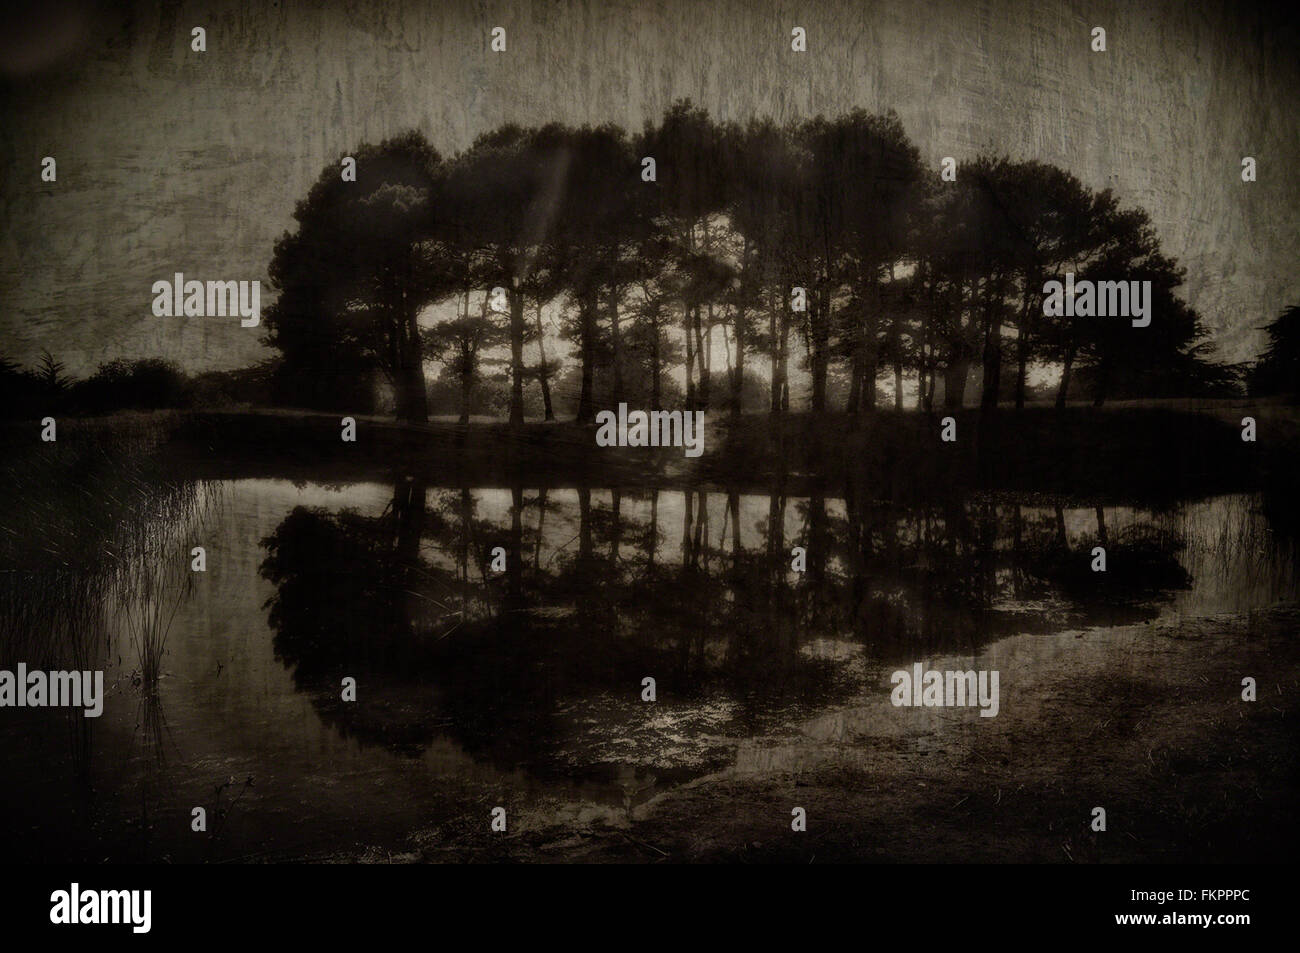 Bosquet d'arbres à côté d'un étang. overlay texture ajoutée et dans des teintes sépia pour rendre l'image look vintage. Banque D'Images